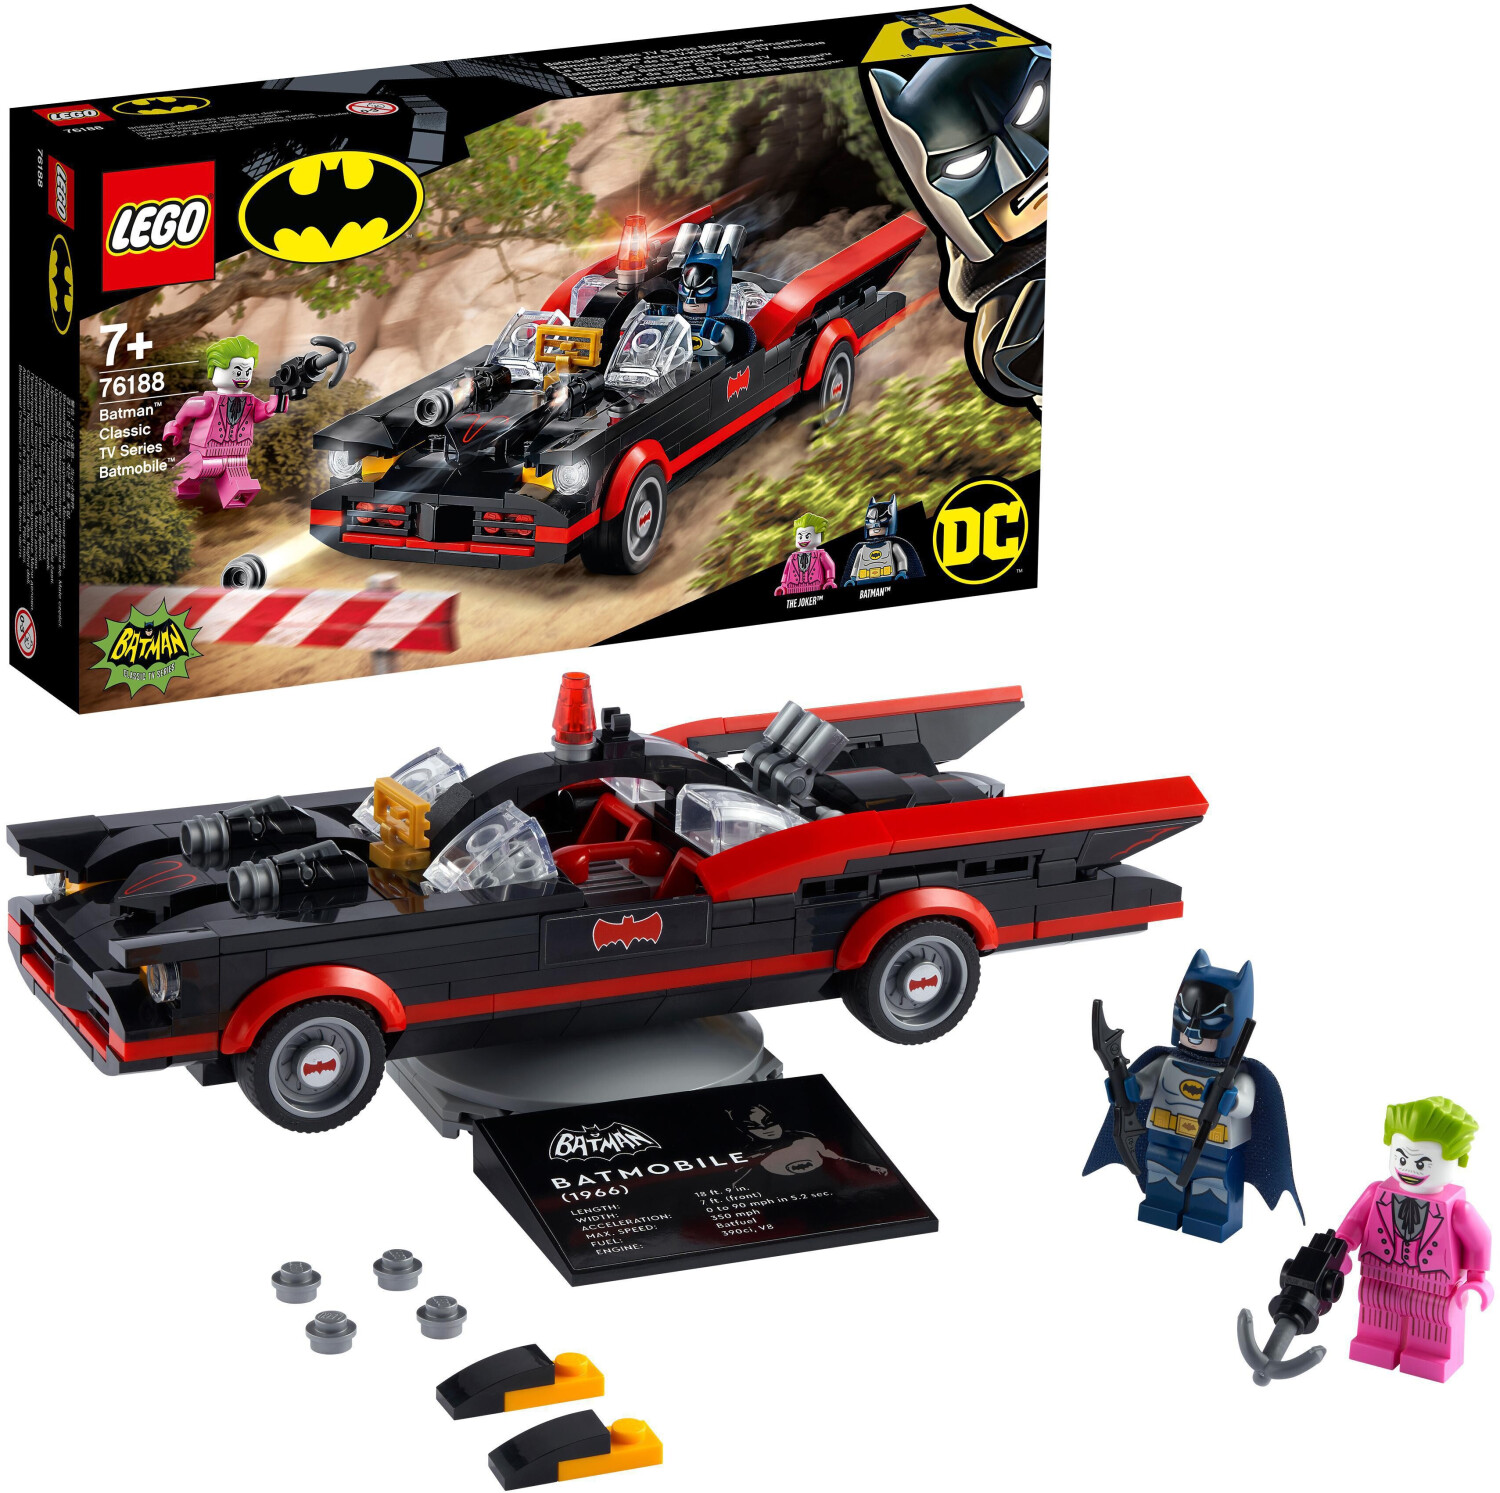 La Batmobile™ de Batman™ - Série TV classique (76188) - Toys